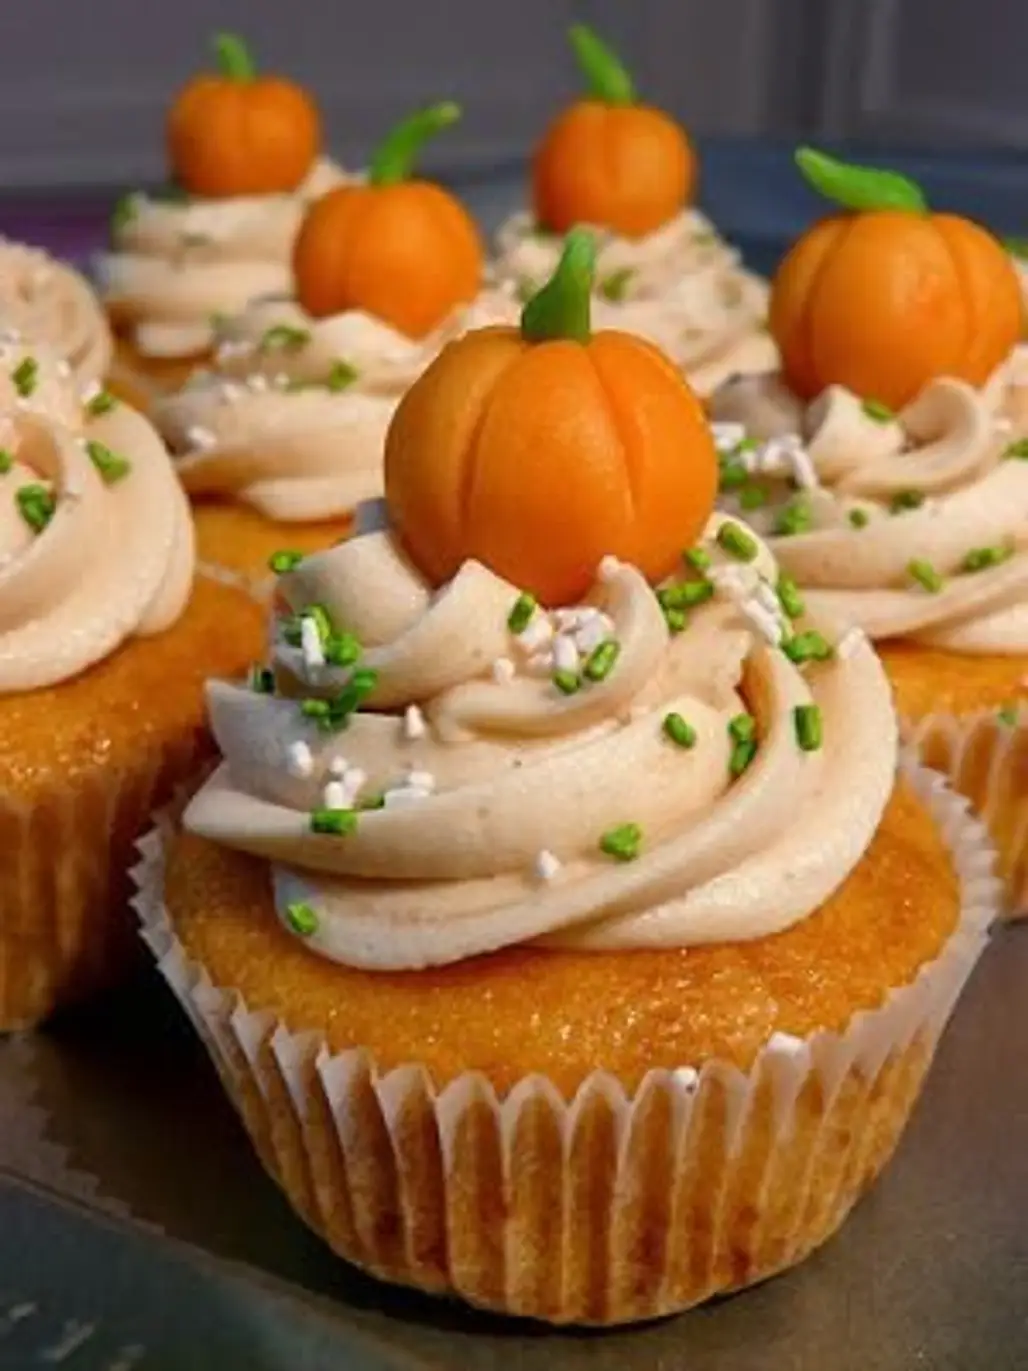 Pumpkin Cupcakes